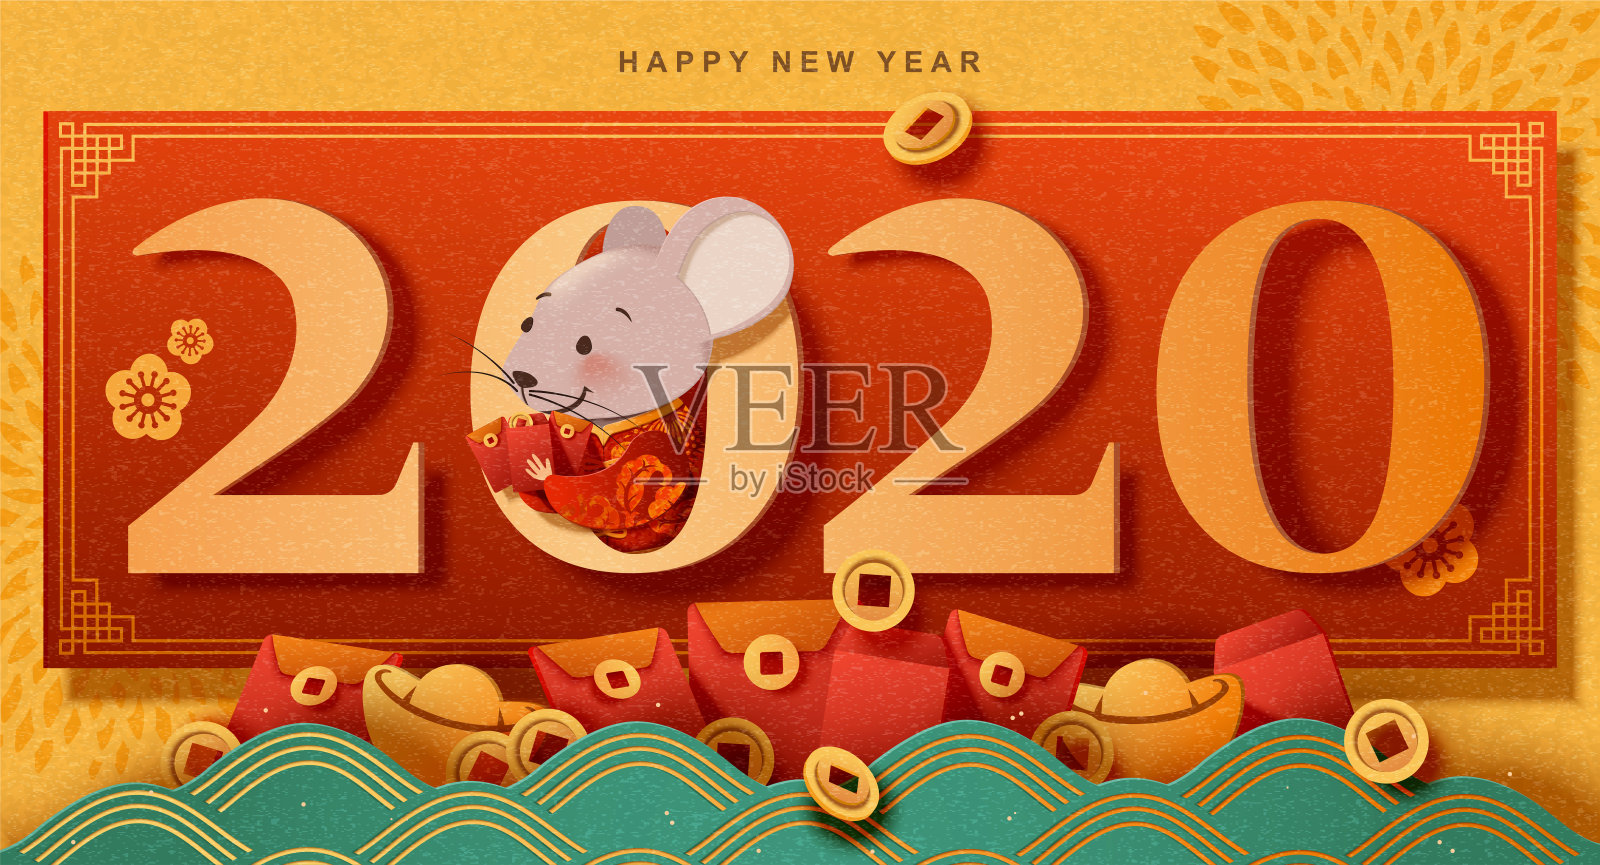 可爱的老鼠新年快乐设计模板素材